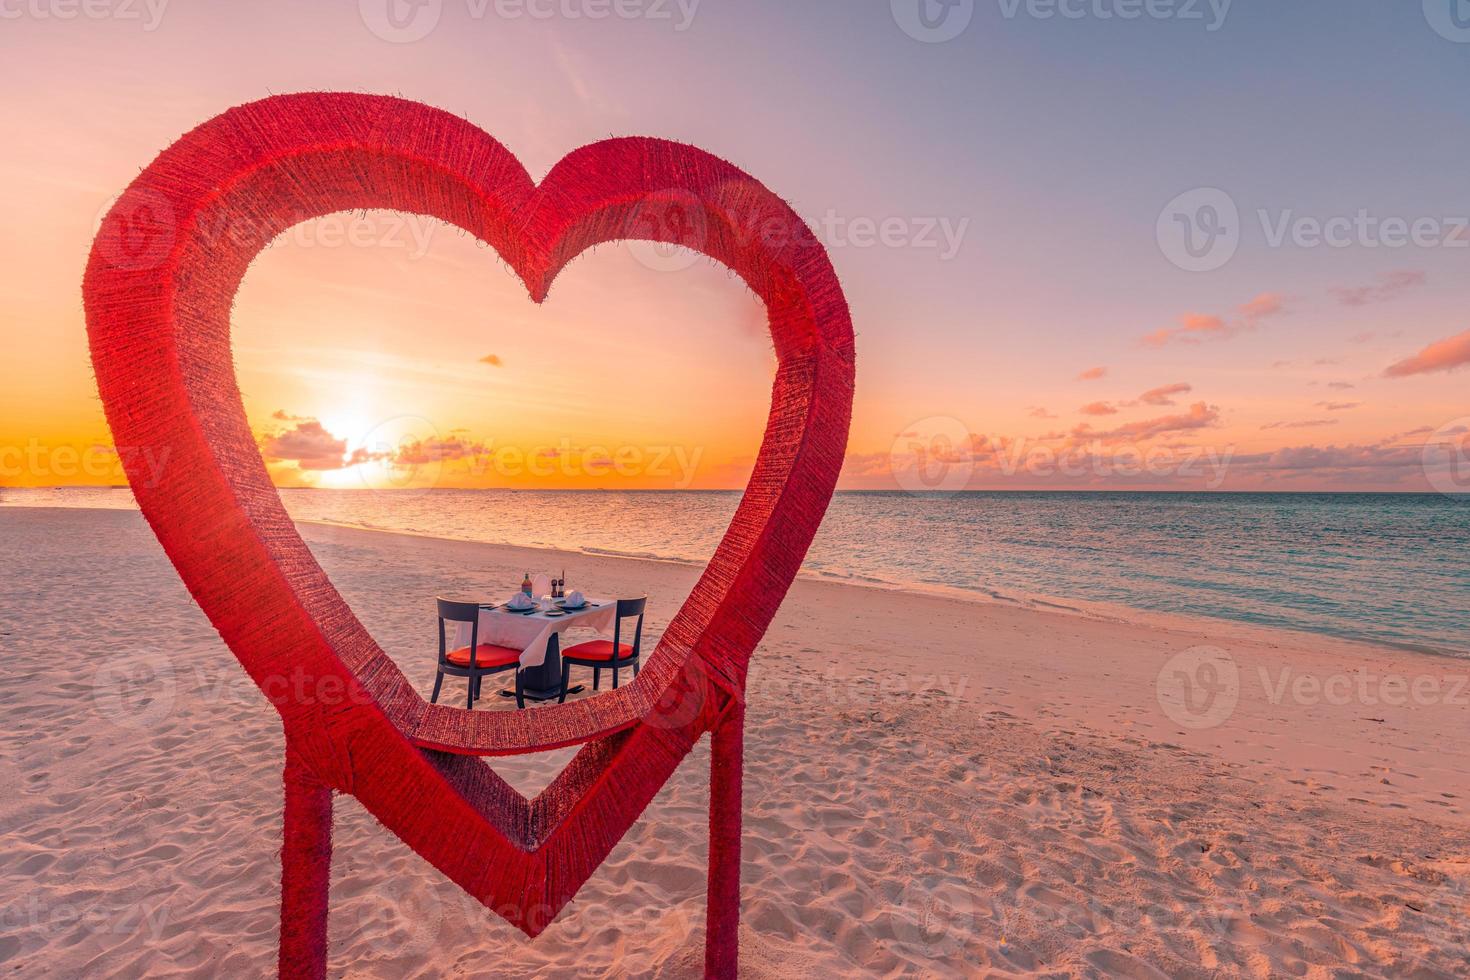 huwelijksreis koppels diner bij privé luxe romantisch diner op tropisch strand in maldiven. zeezicht op zee, geweldige eilandkust met rode hartvormige tafelstoelen. romantische liefdesbestemming dineren foto